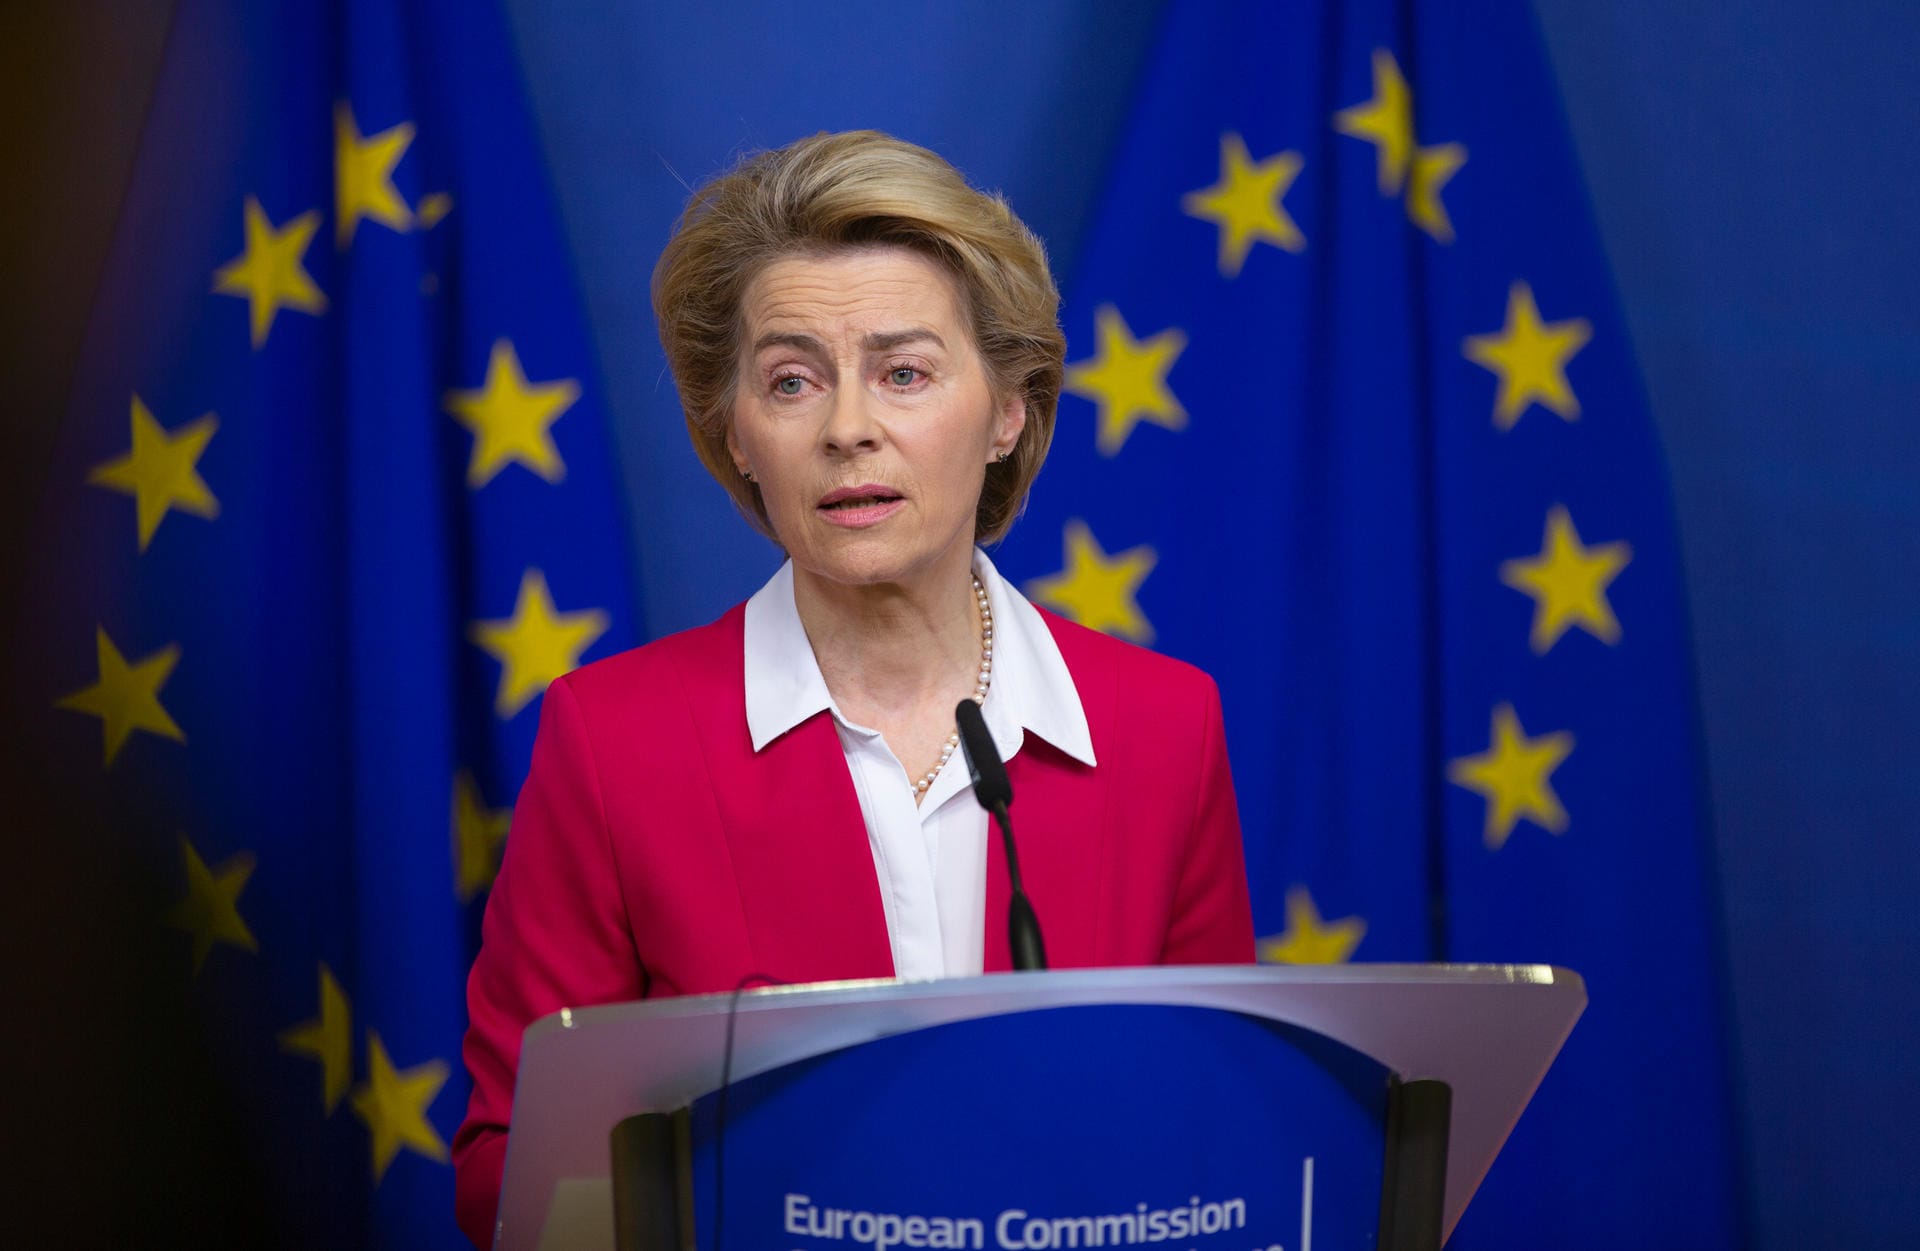 EU-Kommissionspräsidentin Ursula von der Leyen hat zu einem Ende der Gewalt aufgerufen. "Der Gebrauch von Waffen muss jetzt aufhören, um Raum für Dialog zu schaffen", sagte sie am Mittwoch nach einer Sondersitzung der EU-Kommission zur Irankrise. Alle seien dazu aufgerufen, Gespräche wieder aufleben zu lassen. "Und davon kann es nicht genug geben." Die EU könne dabei auf ihre ganz eigene Weise beitragen. "Die aktuelle Krise betrifft nicht nur die Region, sondern uns alle."